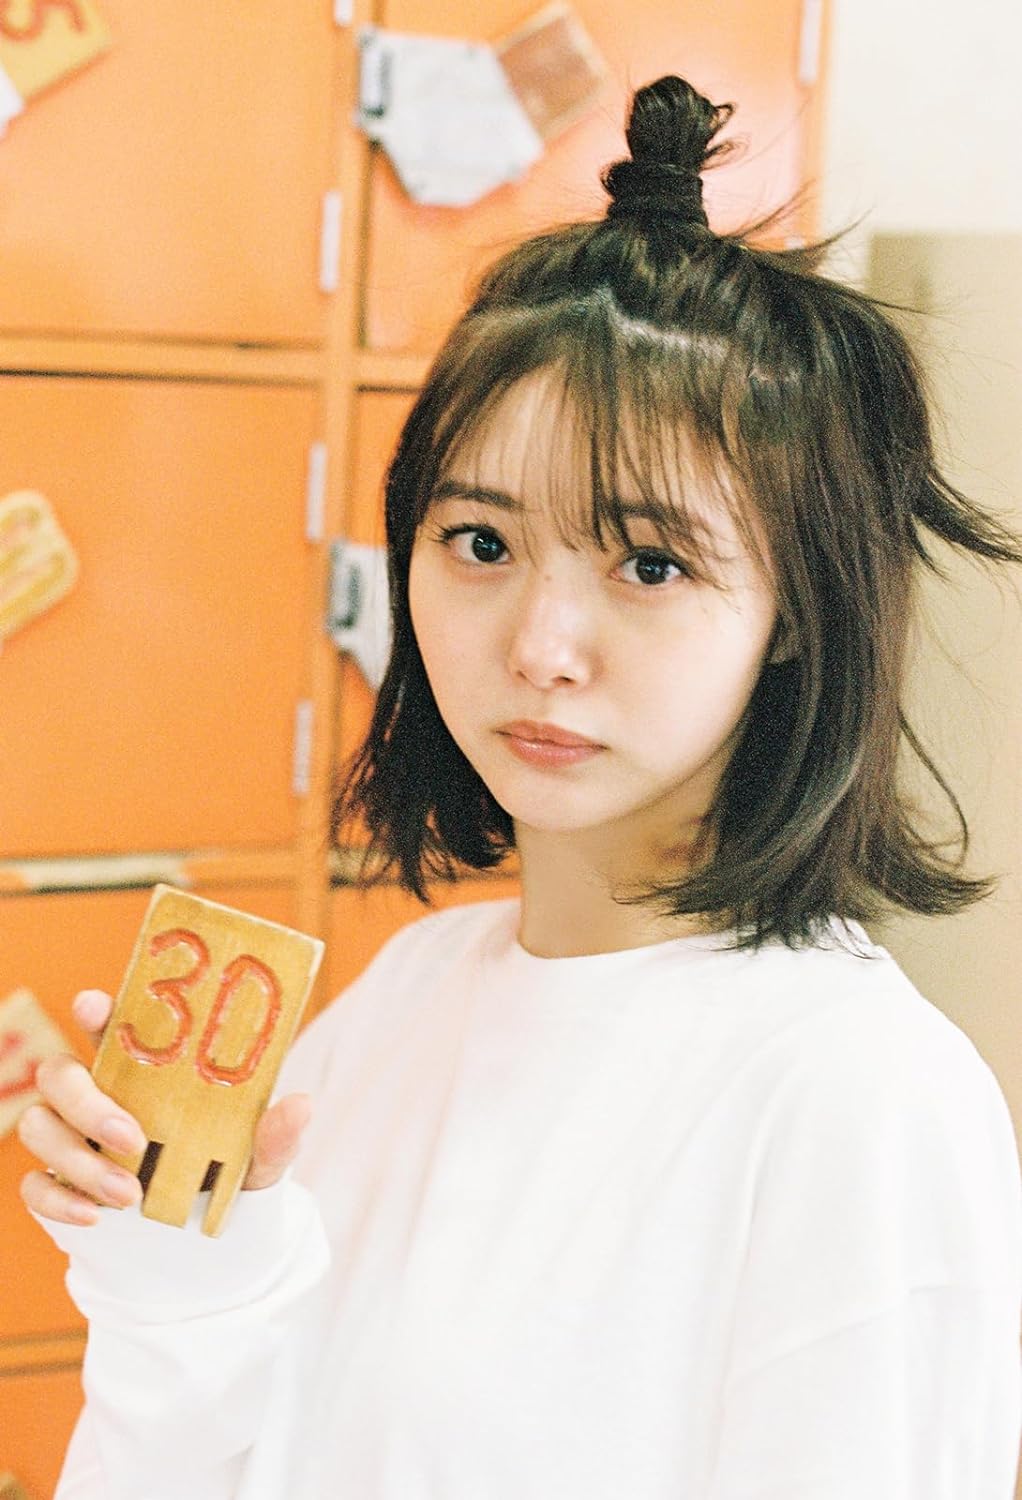 Miori Ichikawa 2nd Photo Book "kaju29%" / AKB48